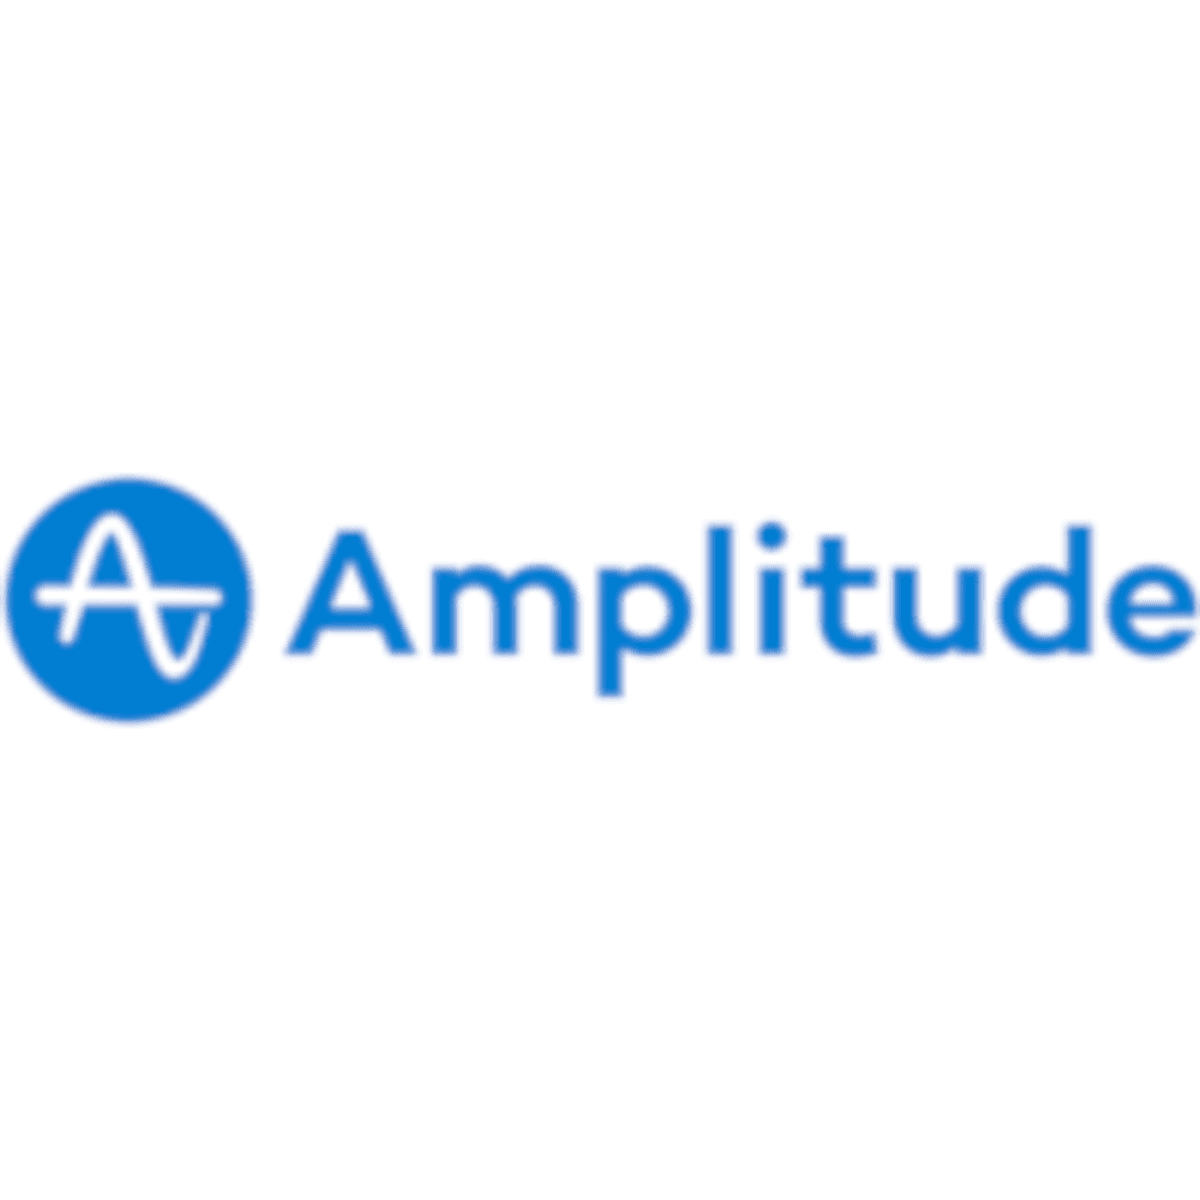 Amplitude opent nieuw hoofdkantoor in Amsterdam image